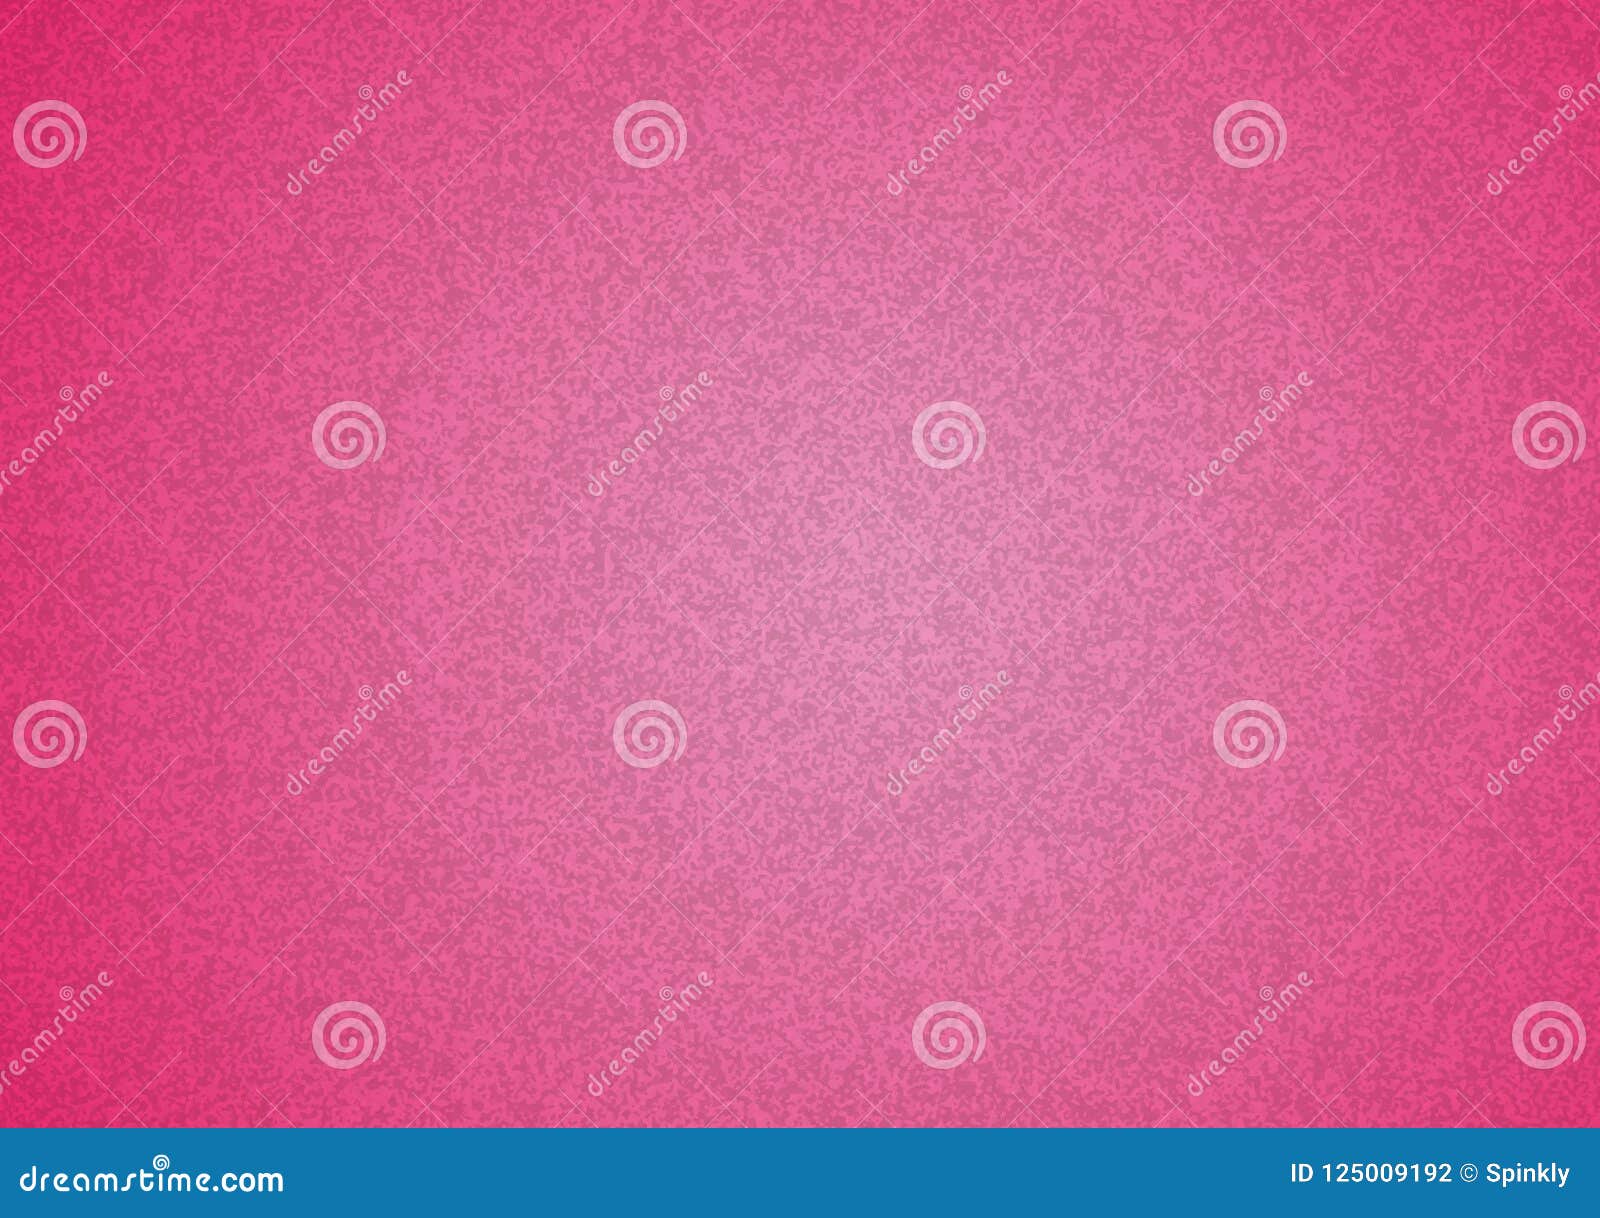 Pink wallpaper plain wallpaper Pippo Rasch Textil 104633